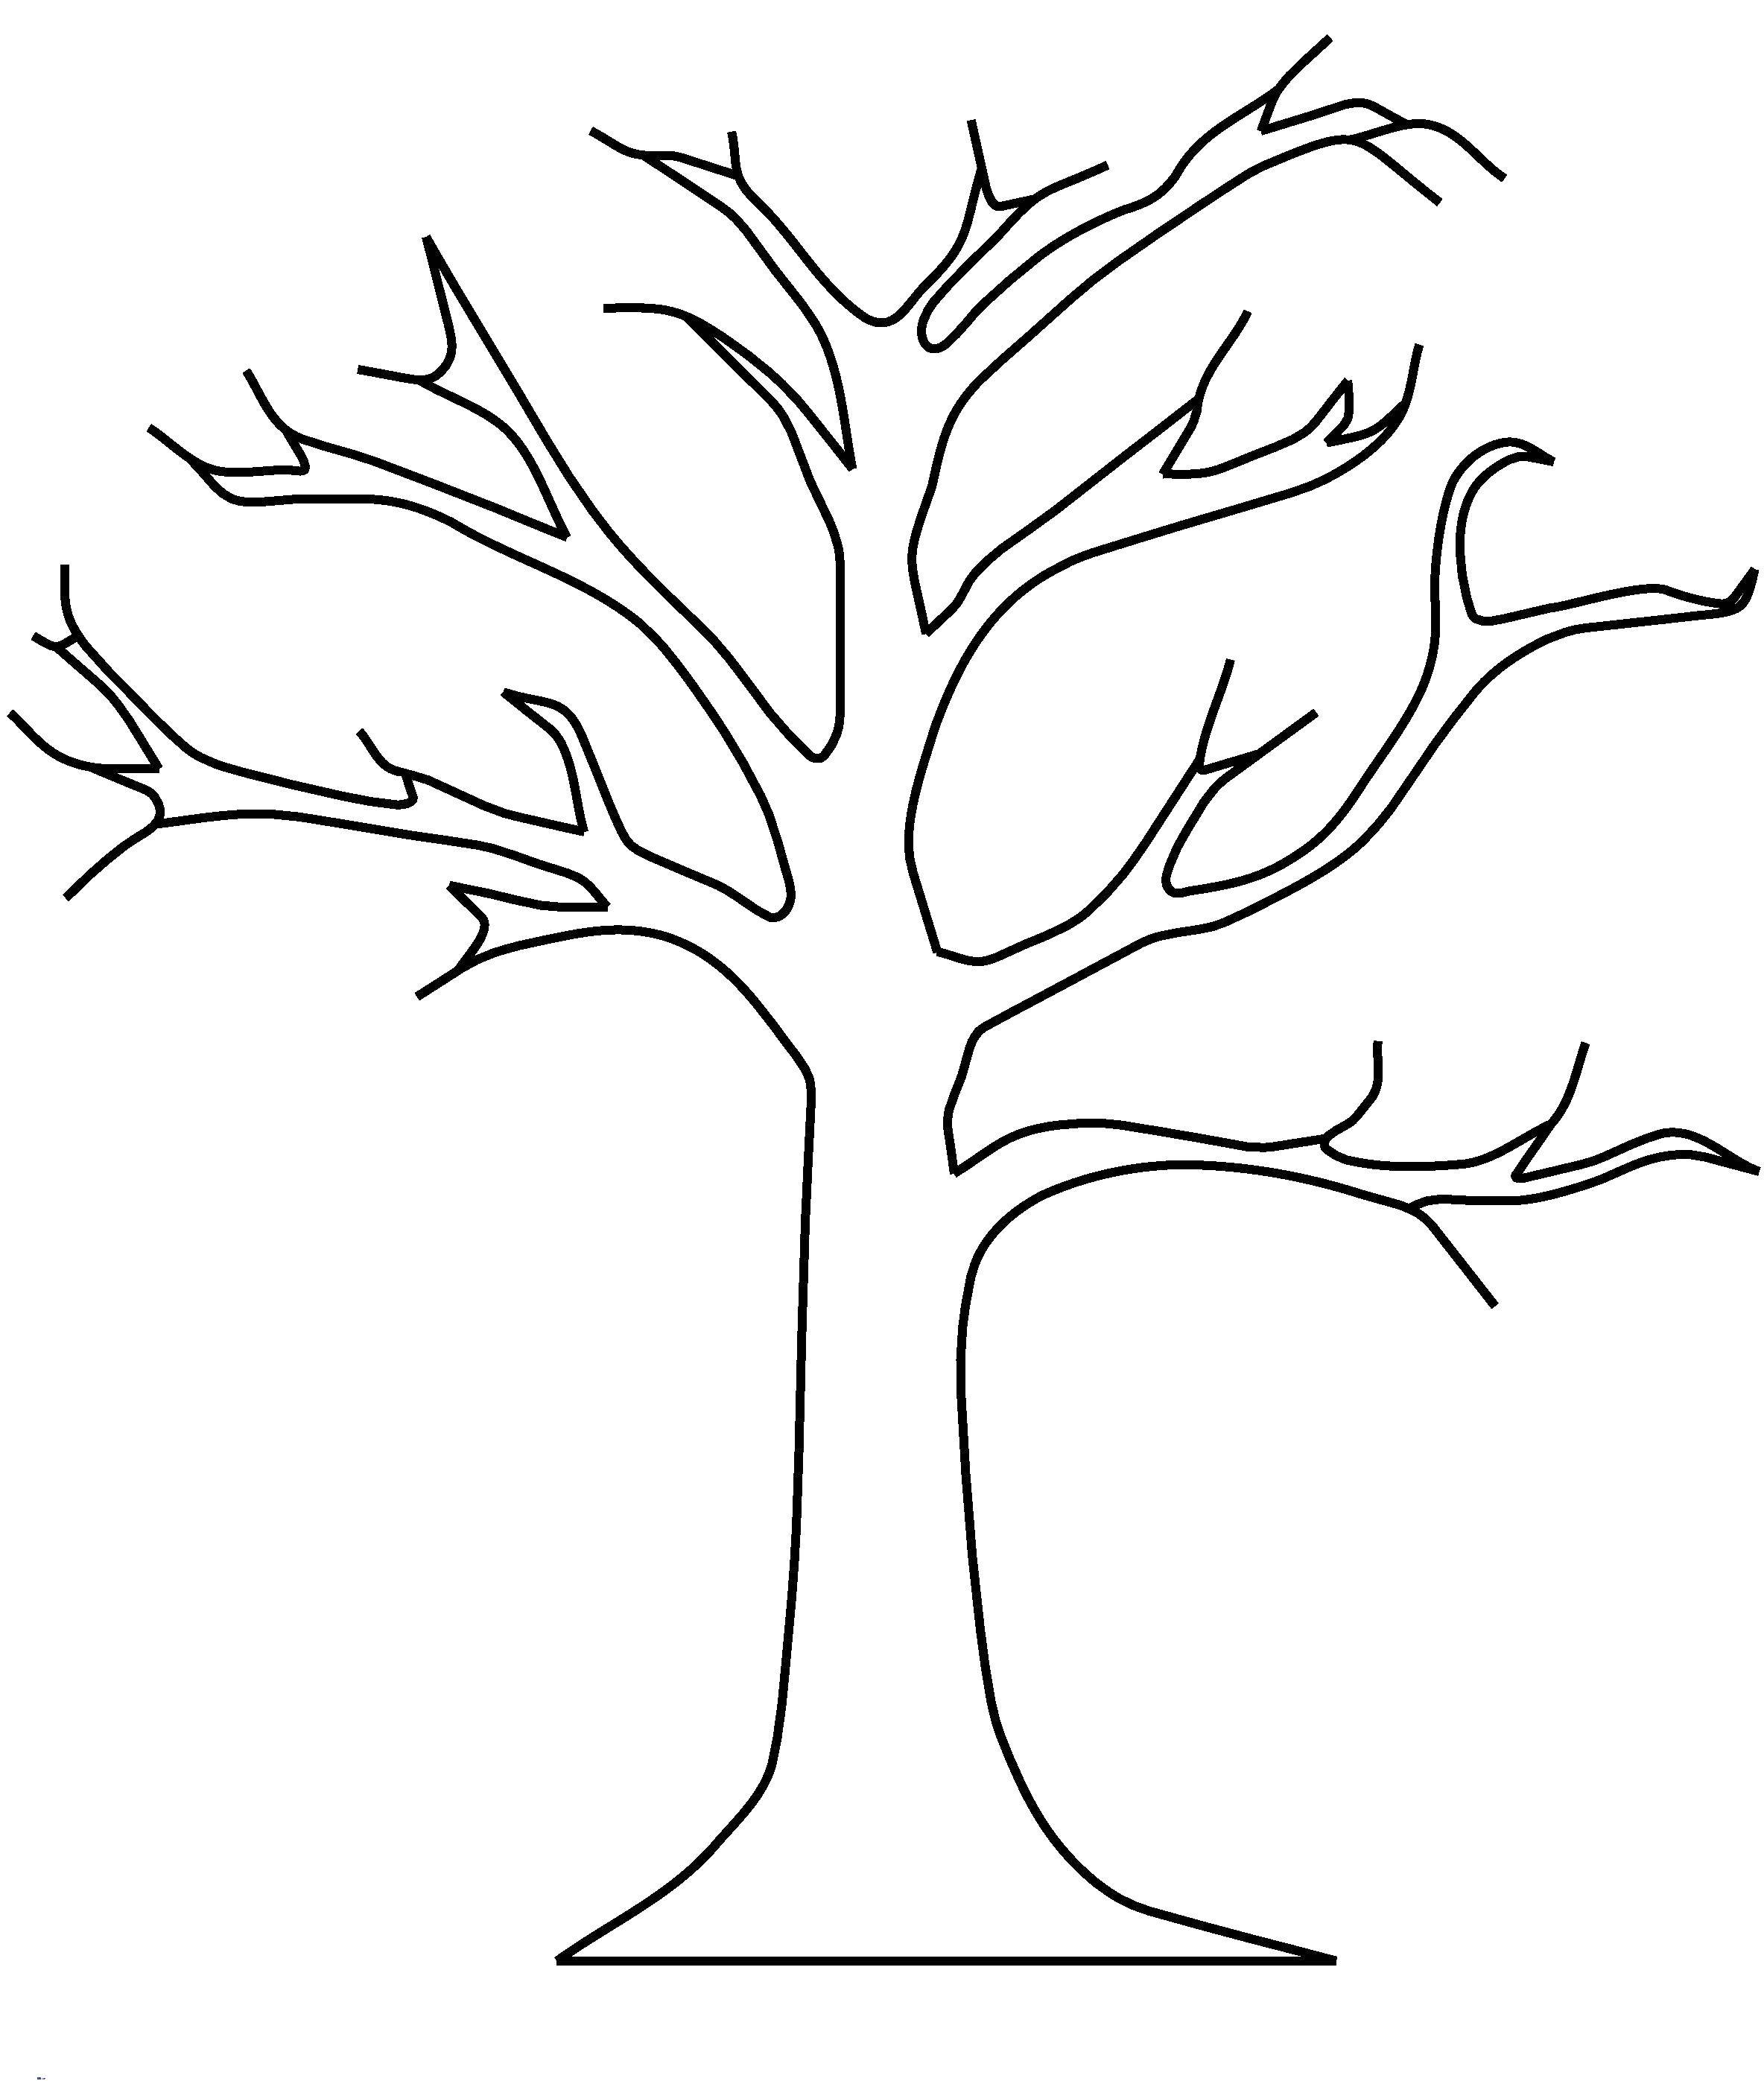 Название: Раскраска Дерево без листвы. Категория: Контур дерева. Теги: контуры, деревья, шаблоны.